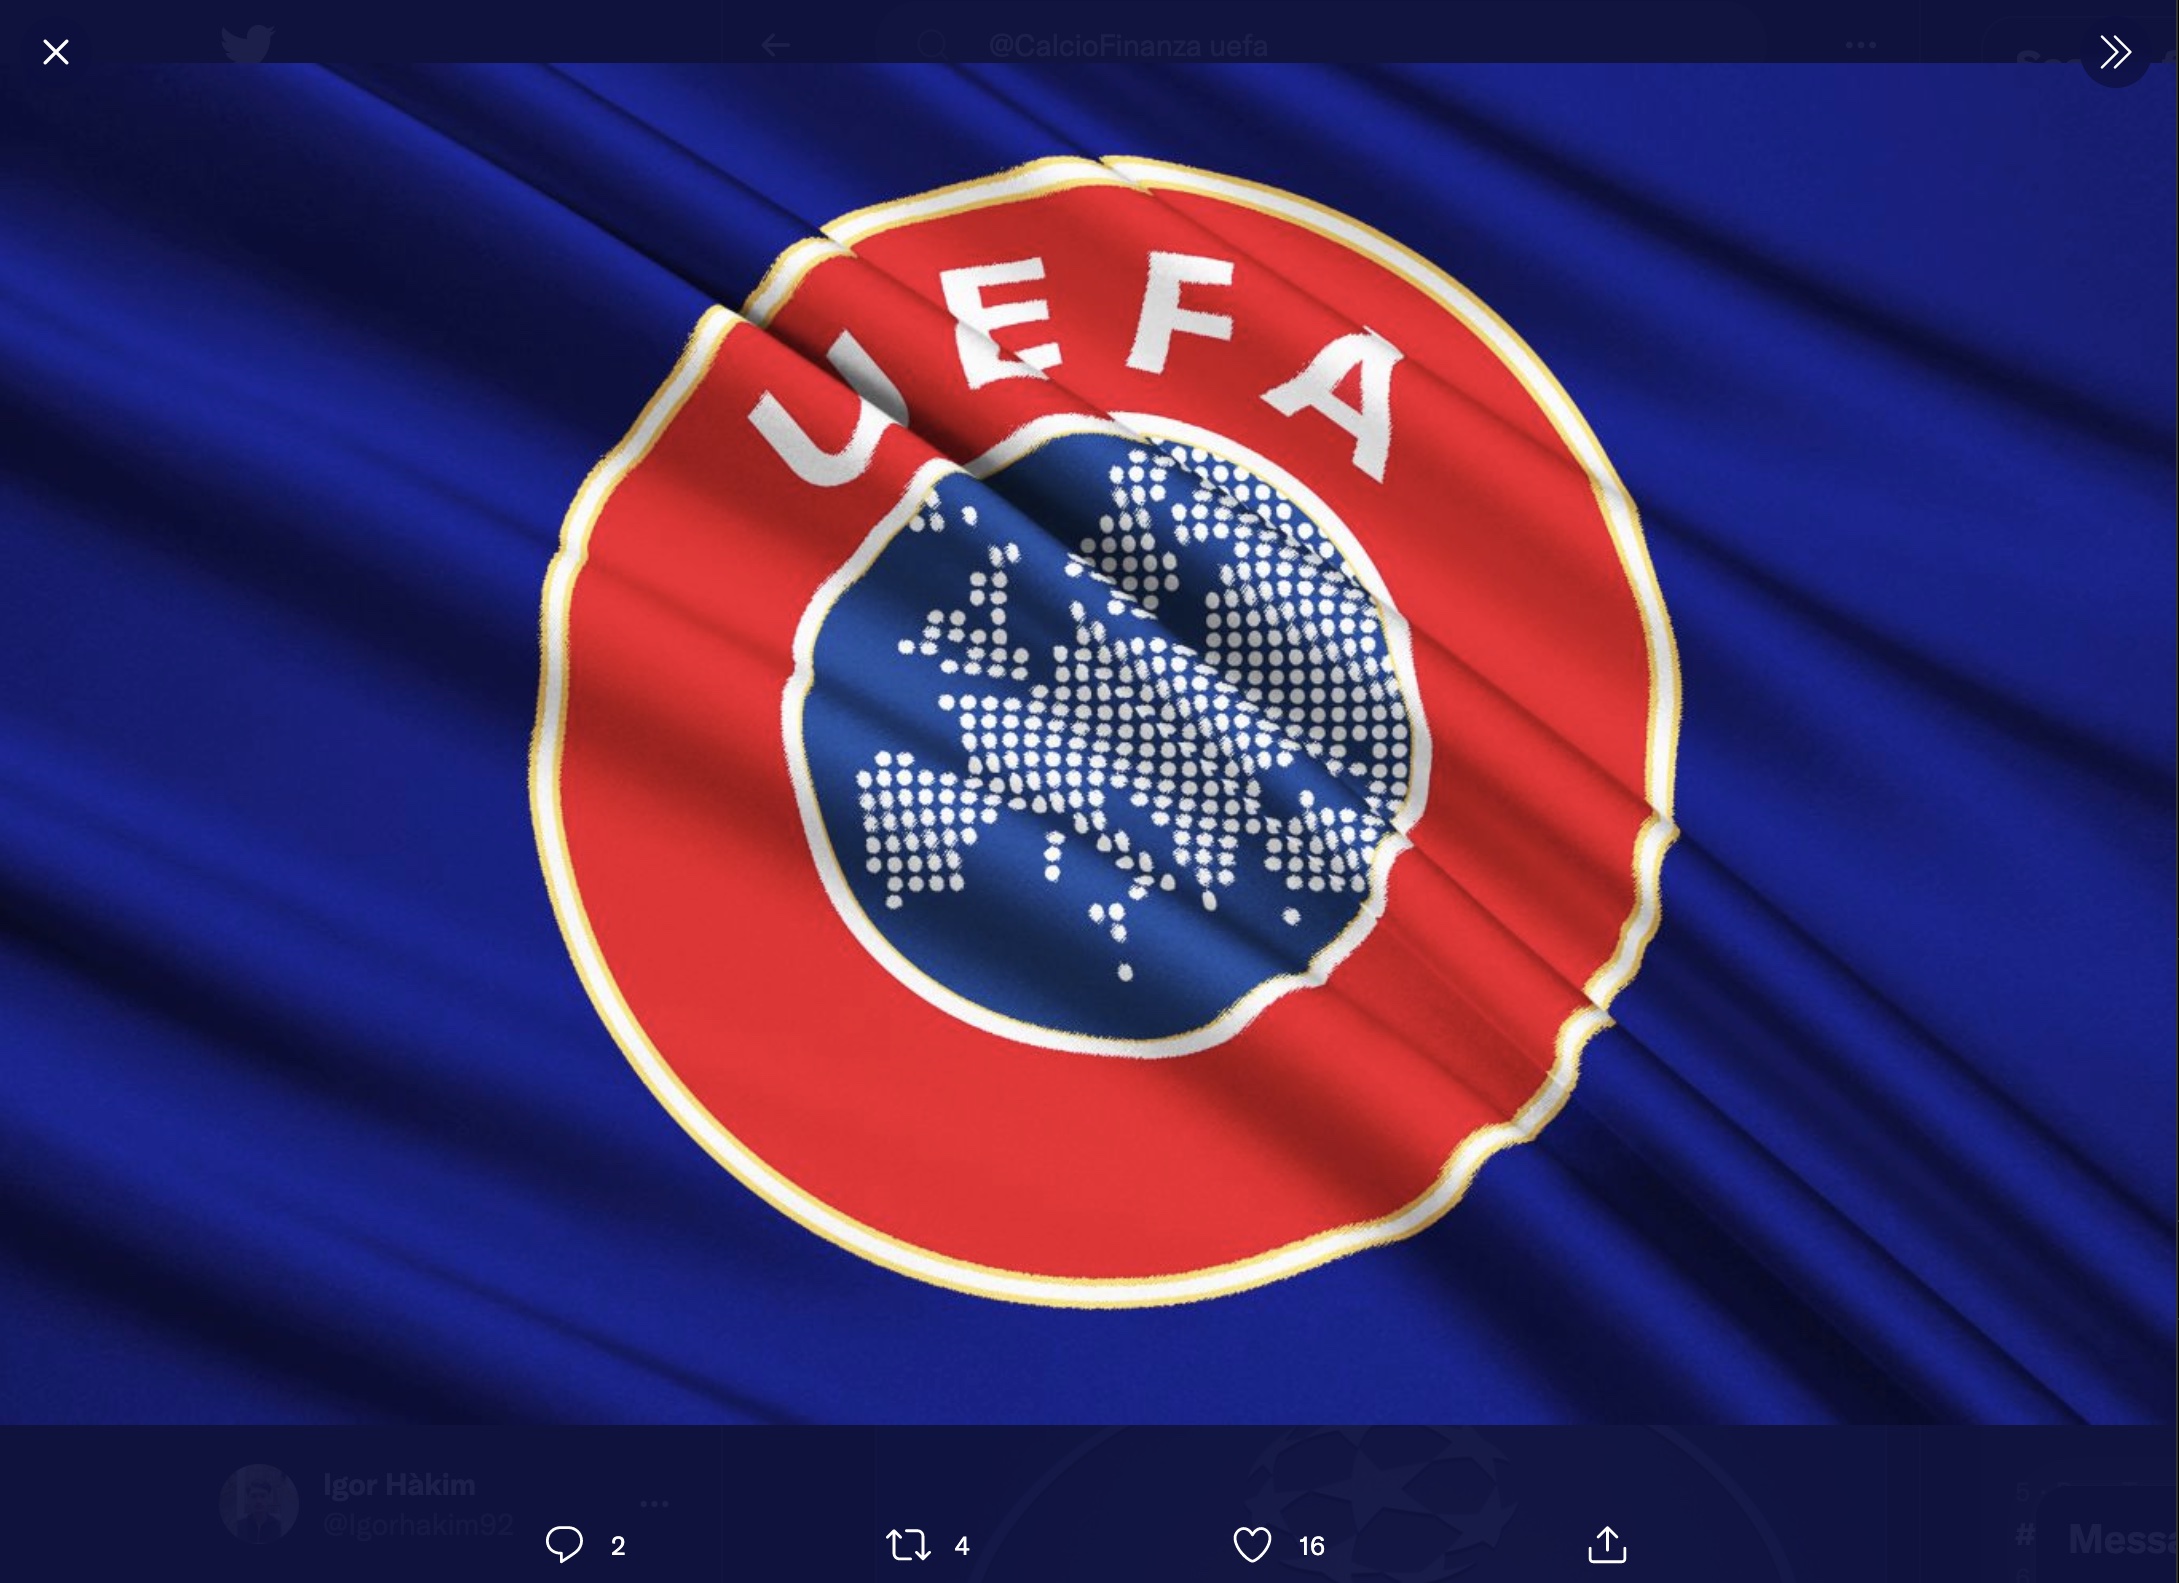 Rencana Baru UEFA: Tim yang Finis di Luar 4 Besar Bisa Lolos ke Liga Champions